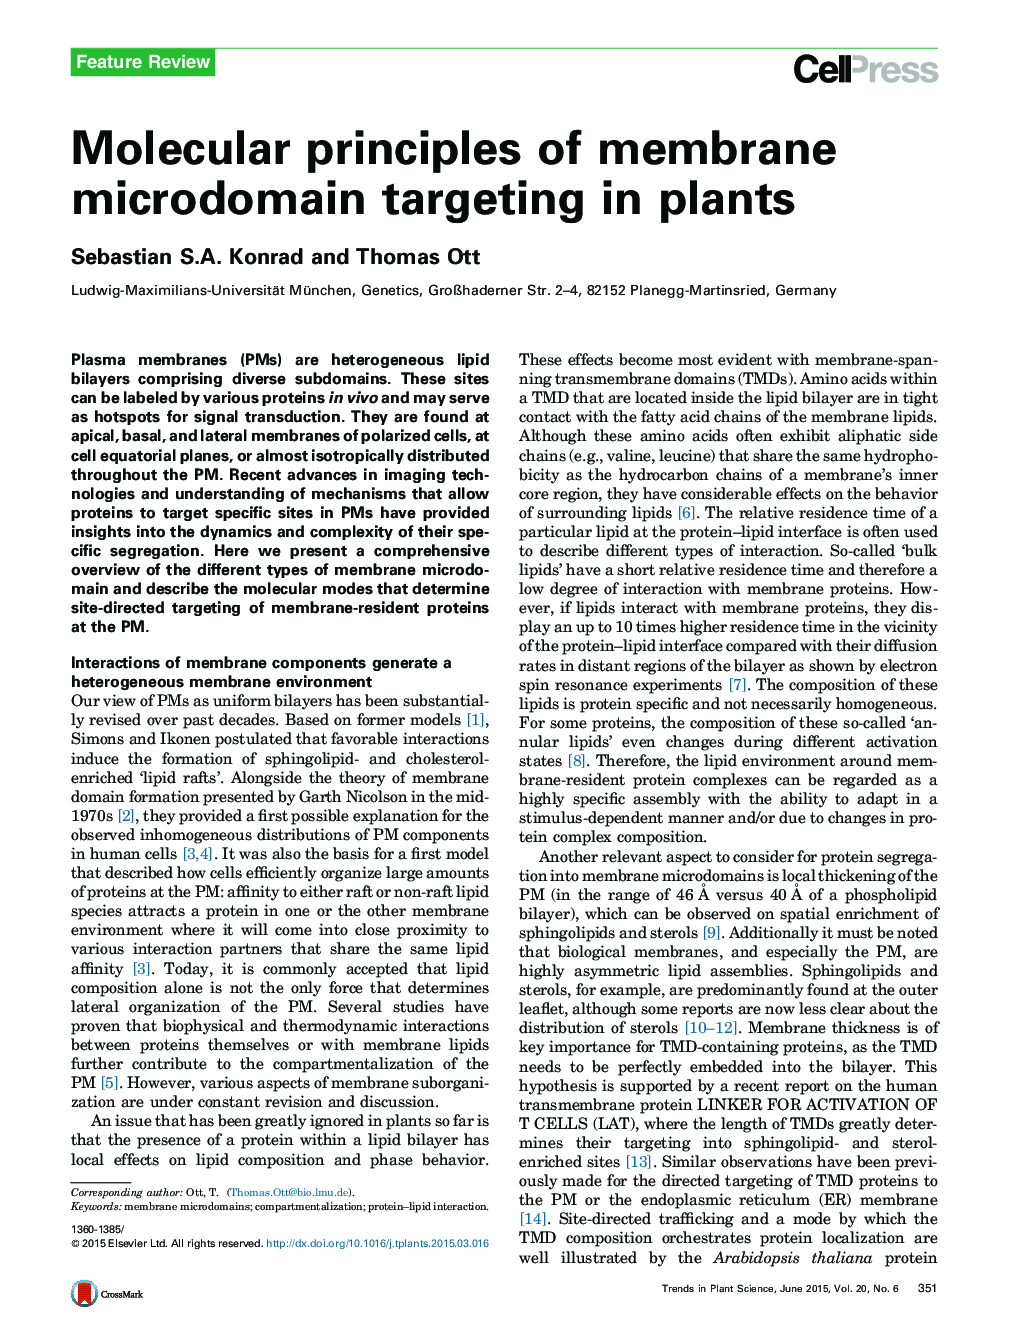 اصول مولکولی میکرو دیمین غشایی هدفمند در گیاهان 